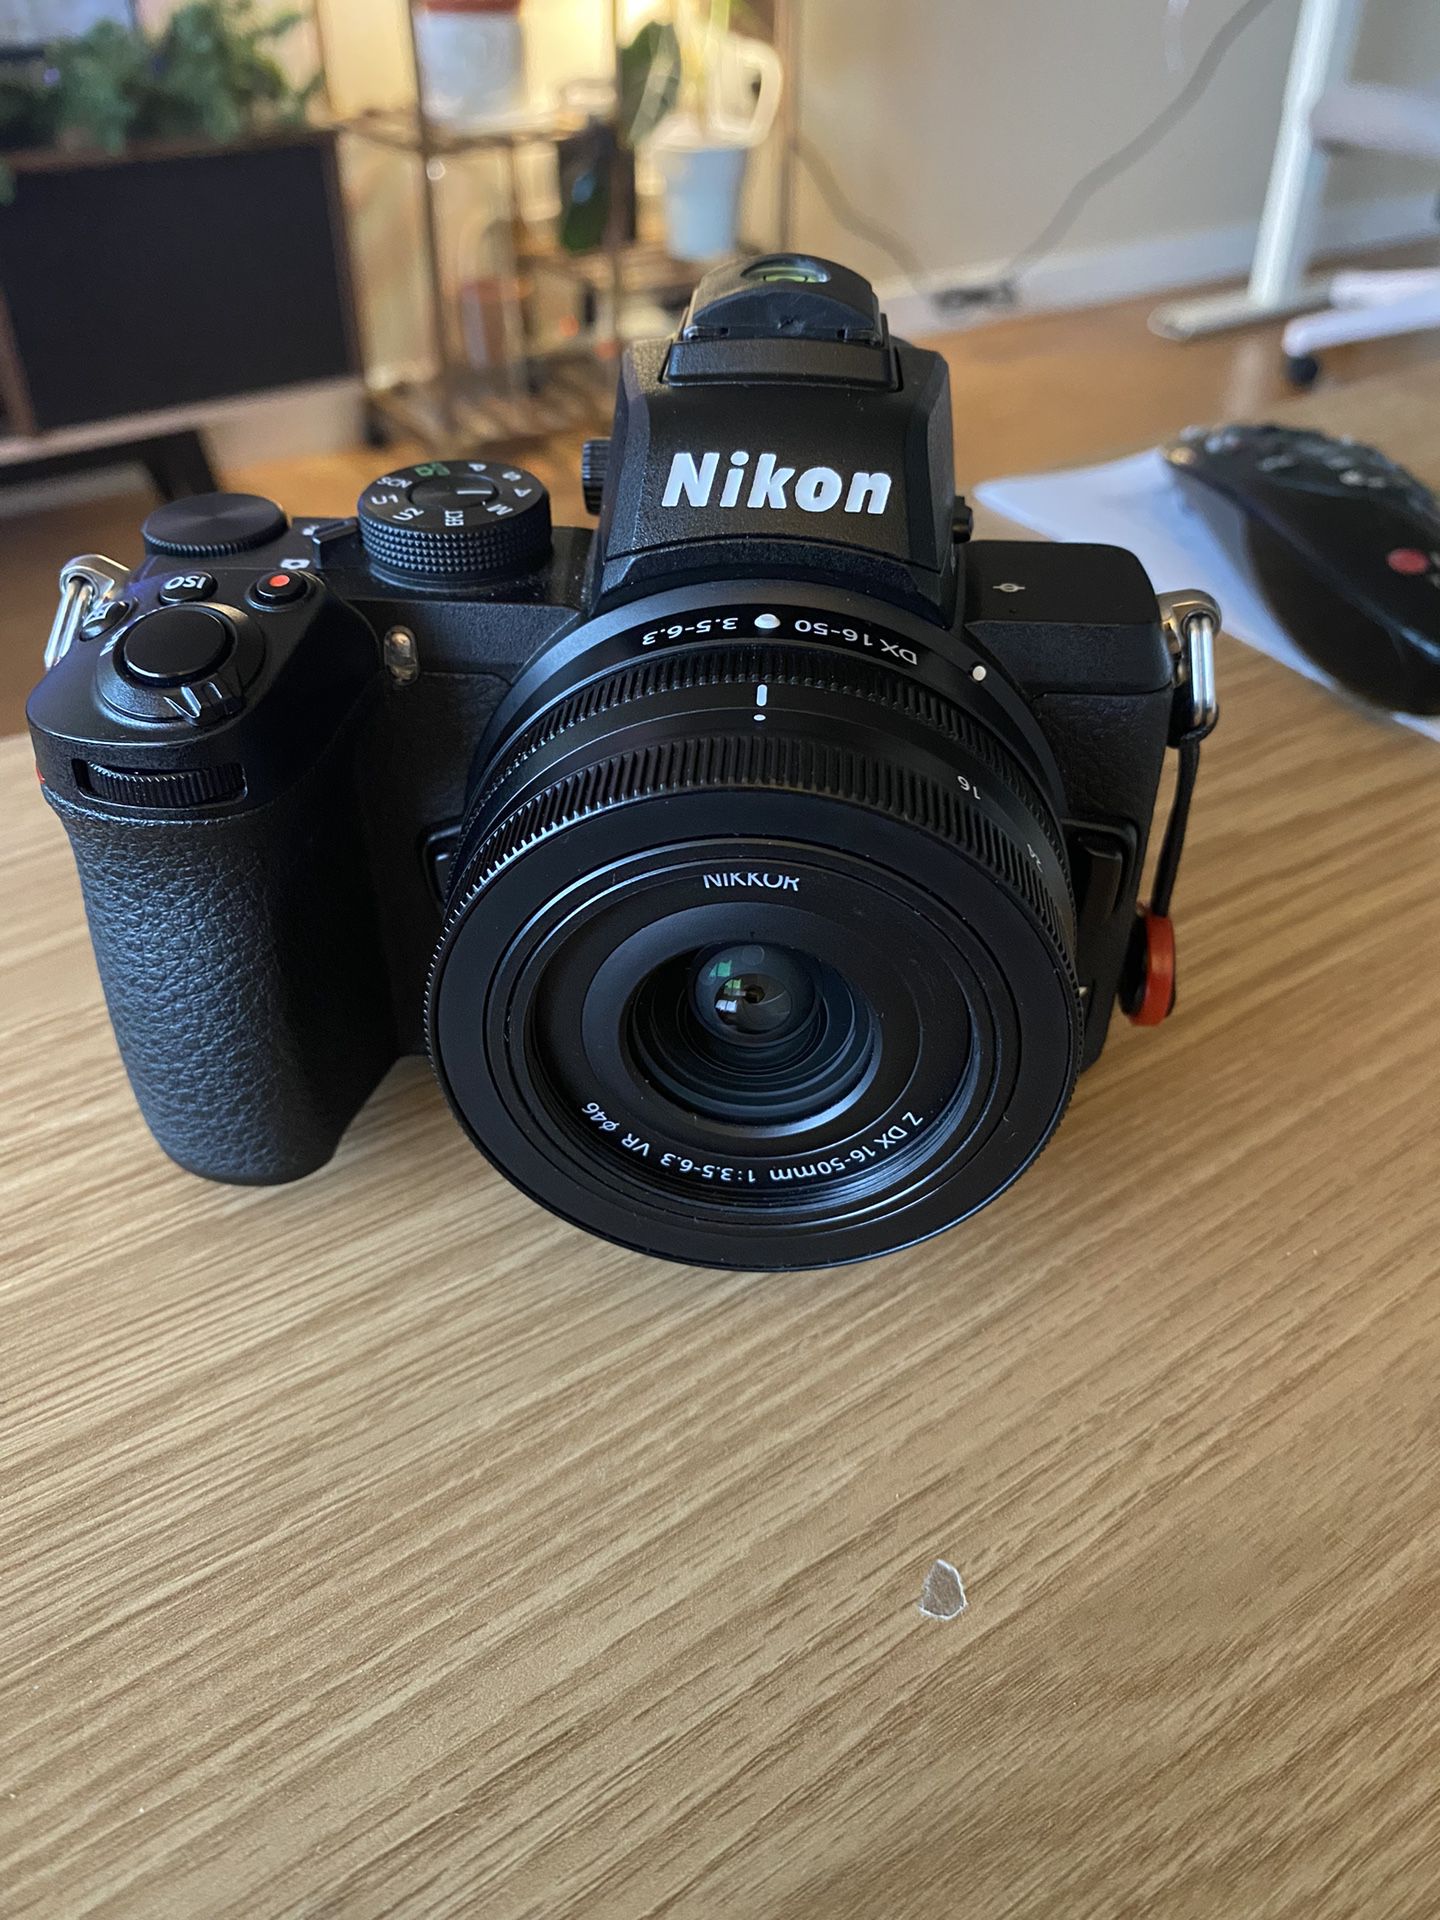 Nikon Z50 w/ 16-50mm Lense